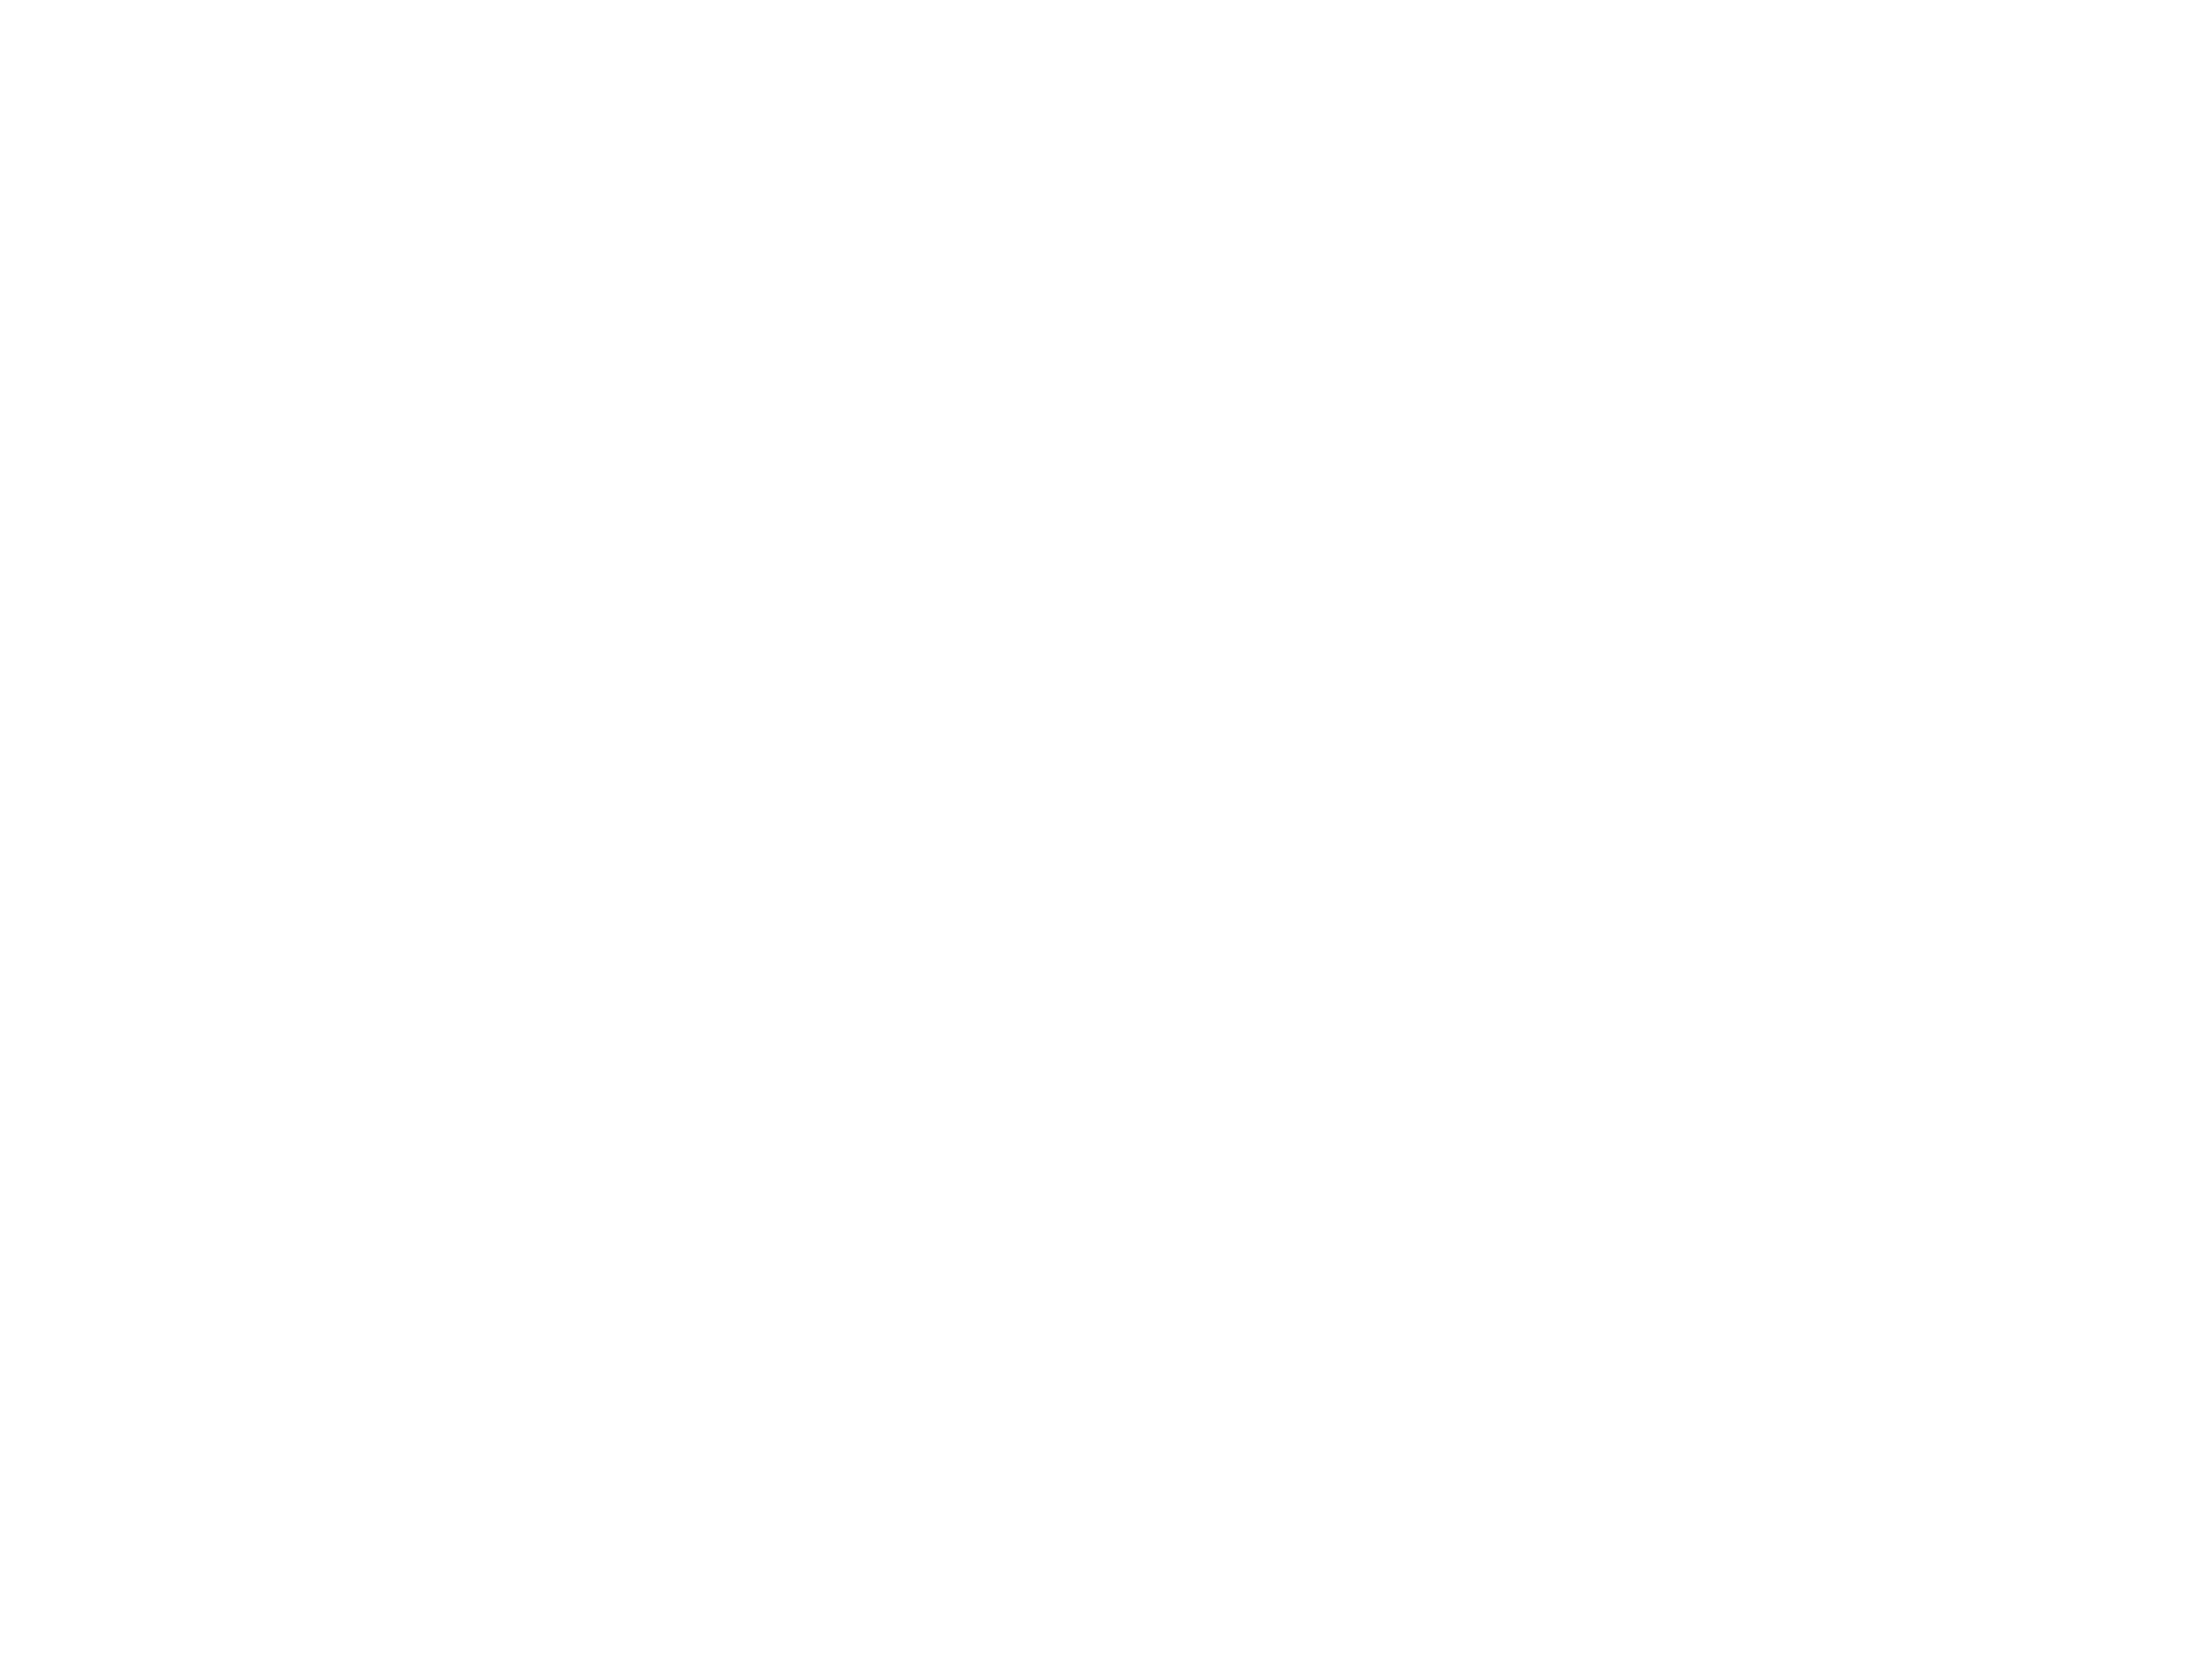 Coopericsson